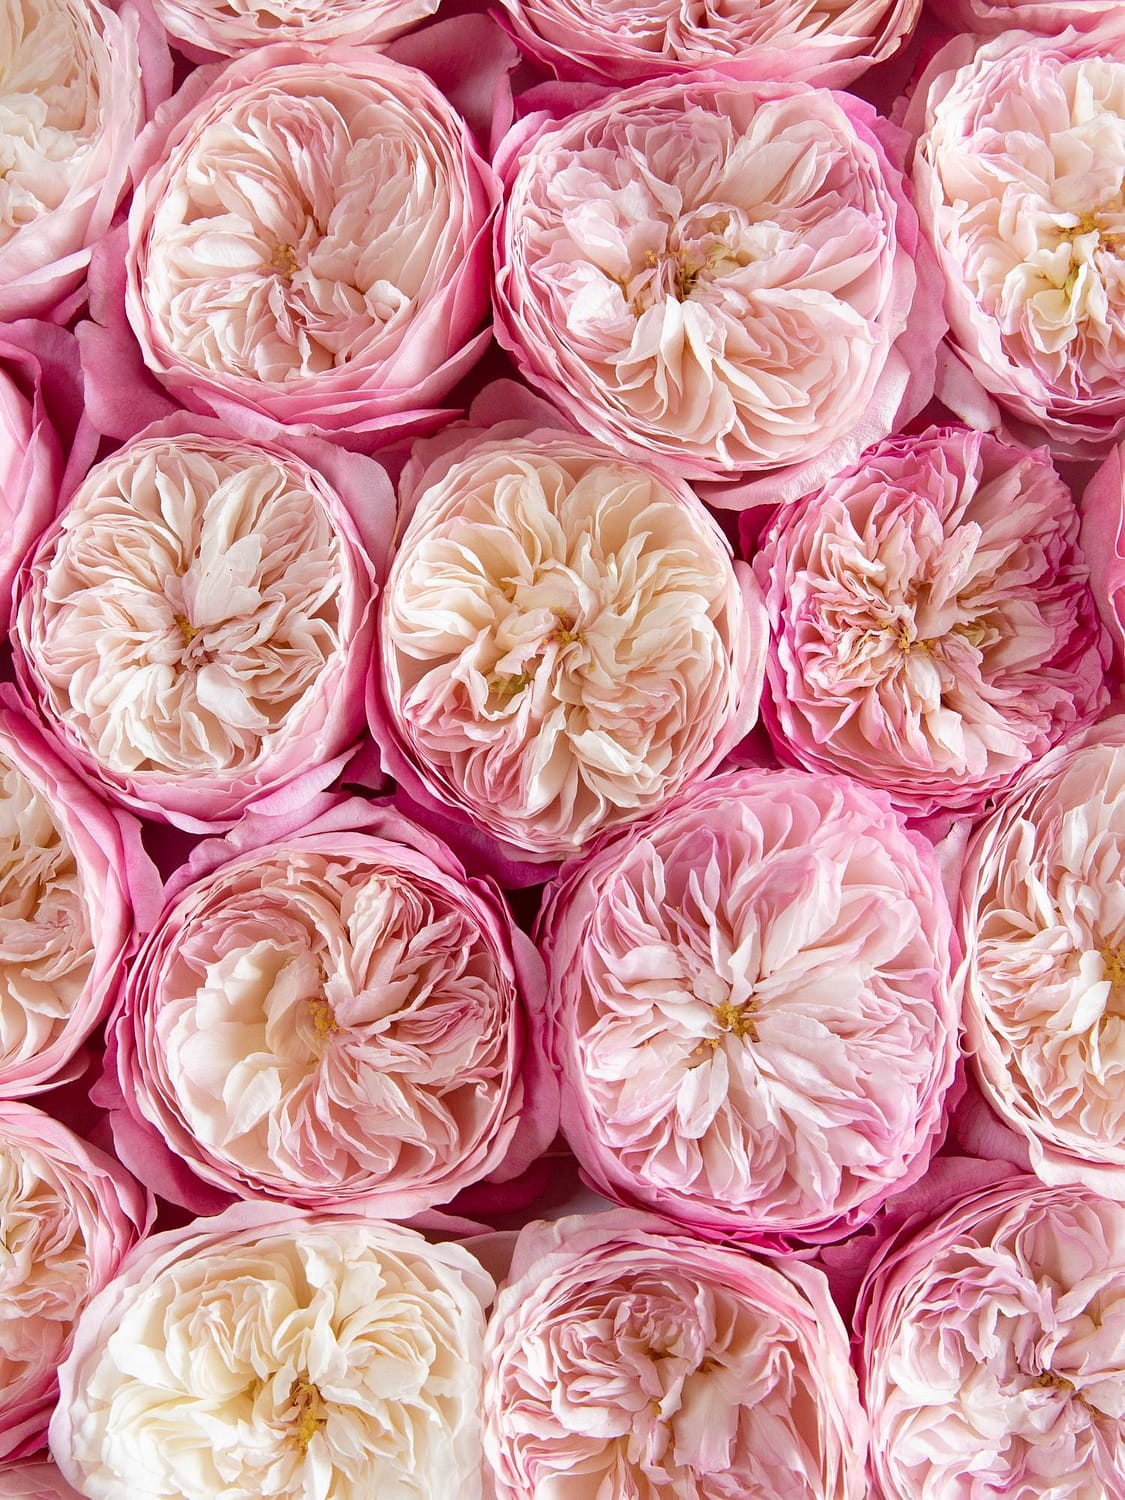 الوردي تتفتح بلومز من زهور الزفاف ديفيد أوستن